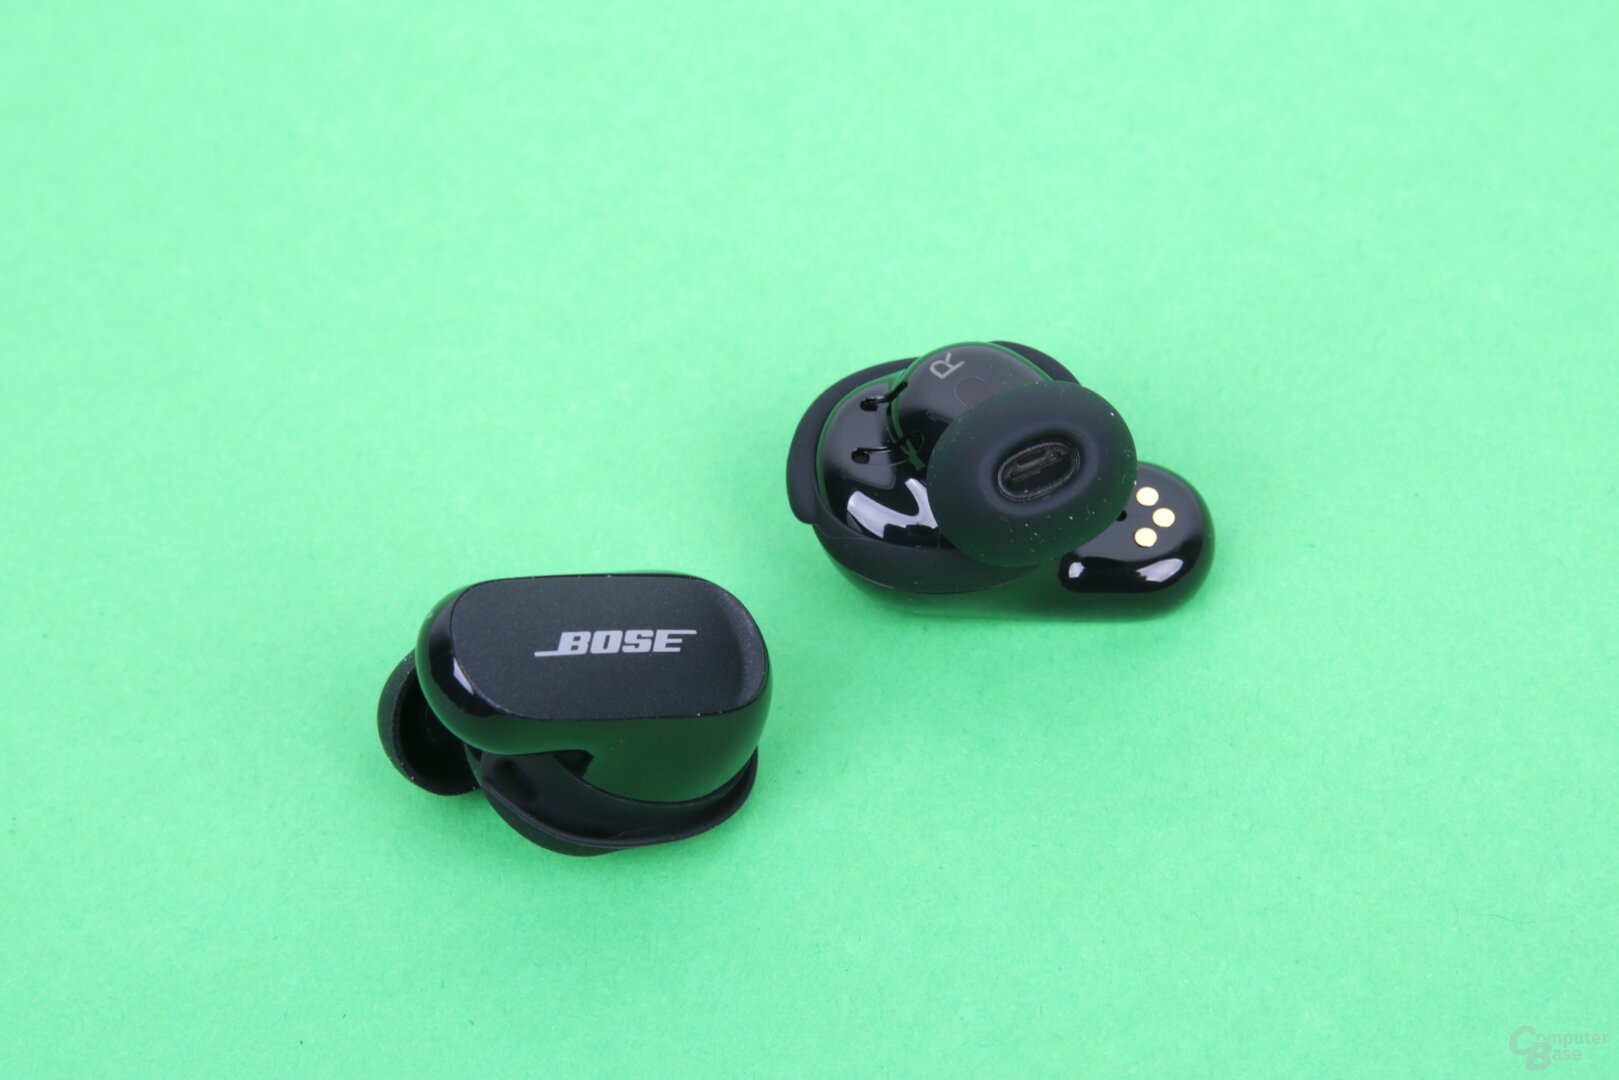 Bose QuietComfort Earbuds Die Test: ComputerBase besten - im ANC-In-Ears II